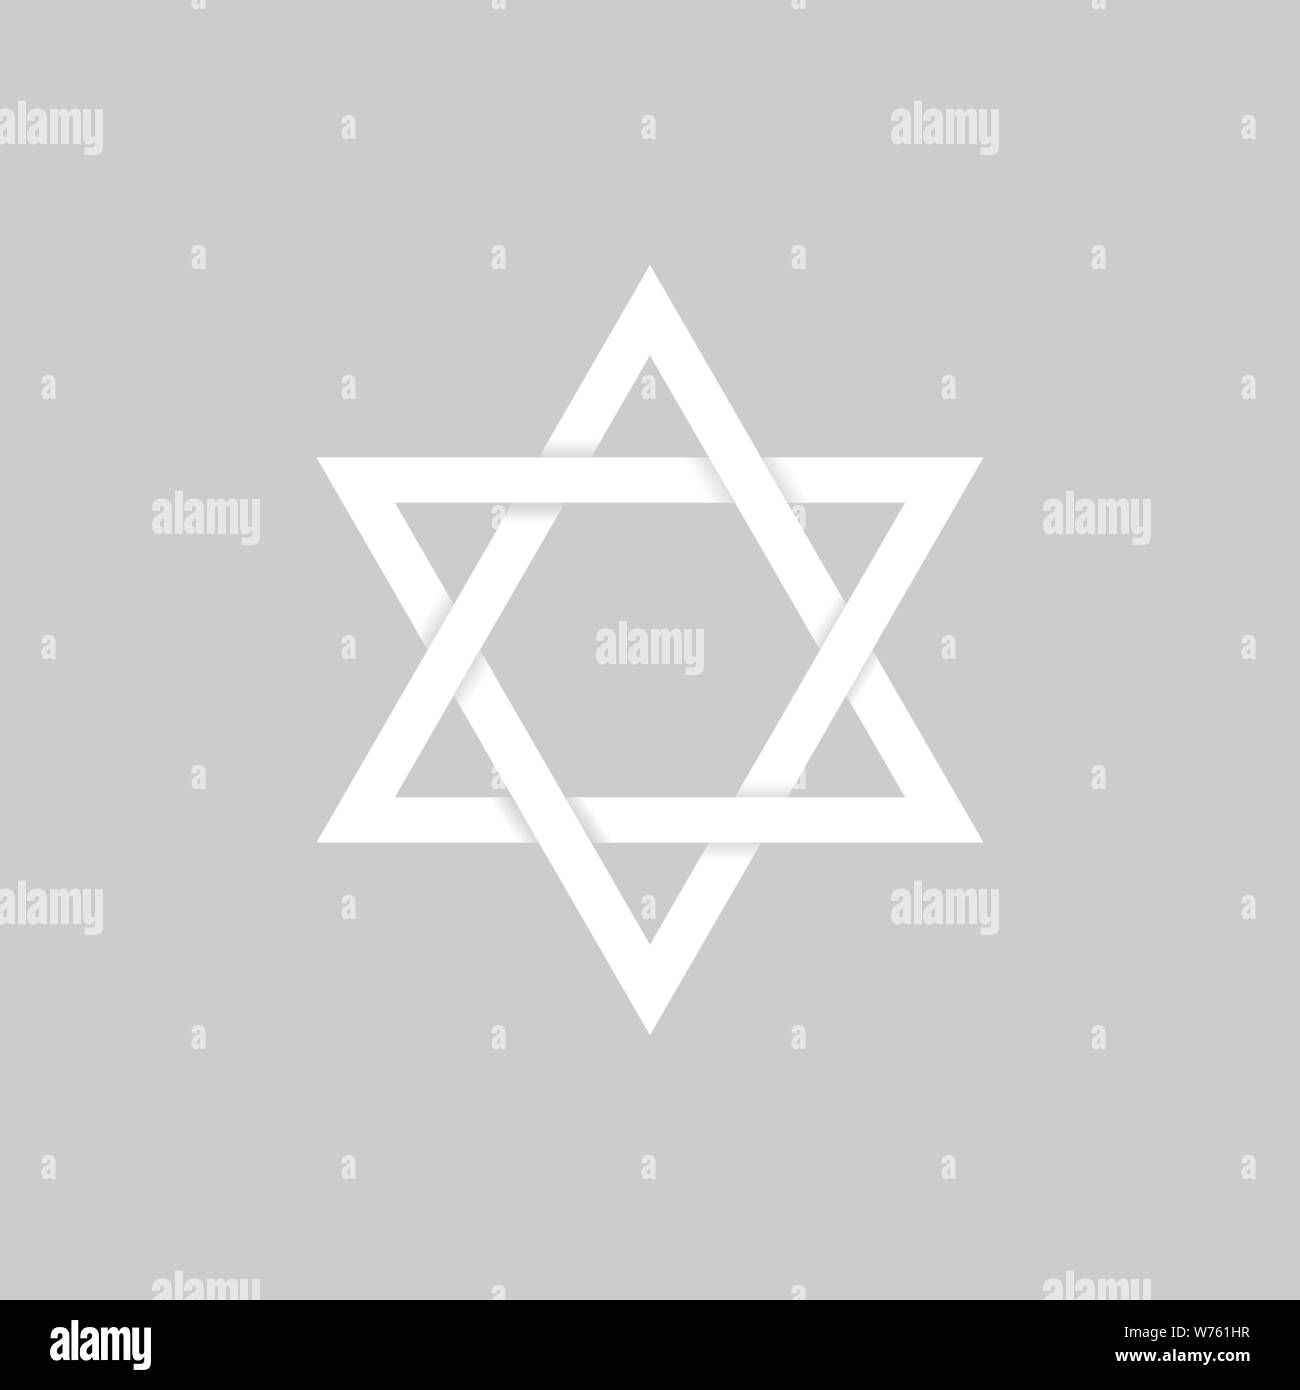 Weißbuch David Stern Symbol. Sechs wies Geometrische star Abbildung, allgemein anerkannten Symbol des modernen jüdischen Identität und Judentum Israel Symbol Stock Vektor